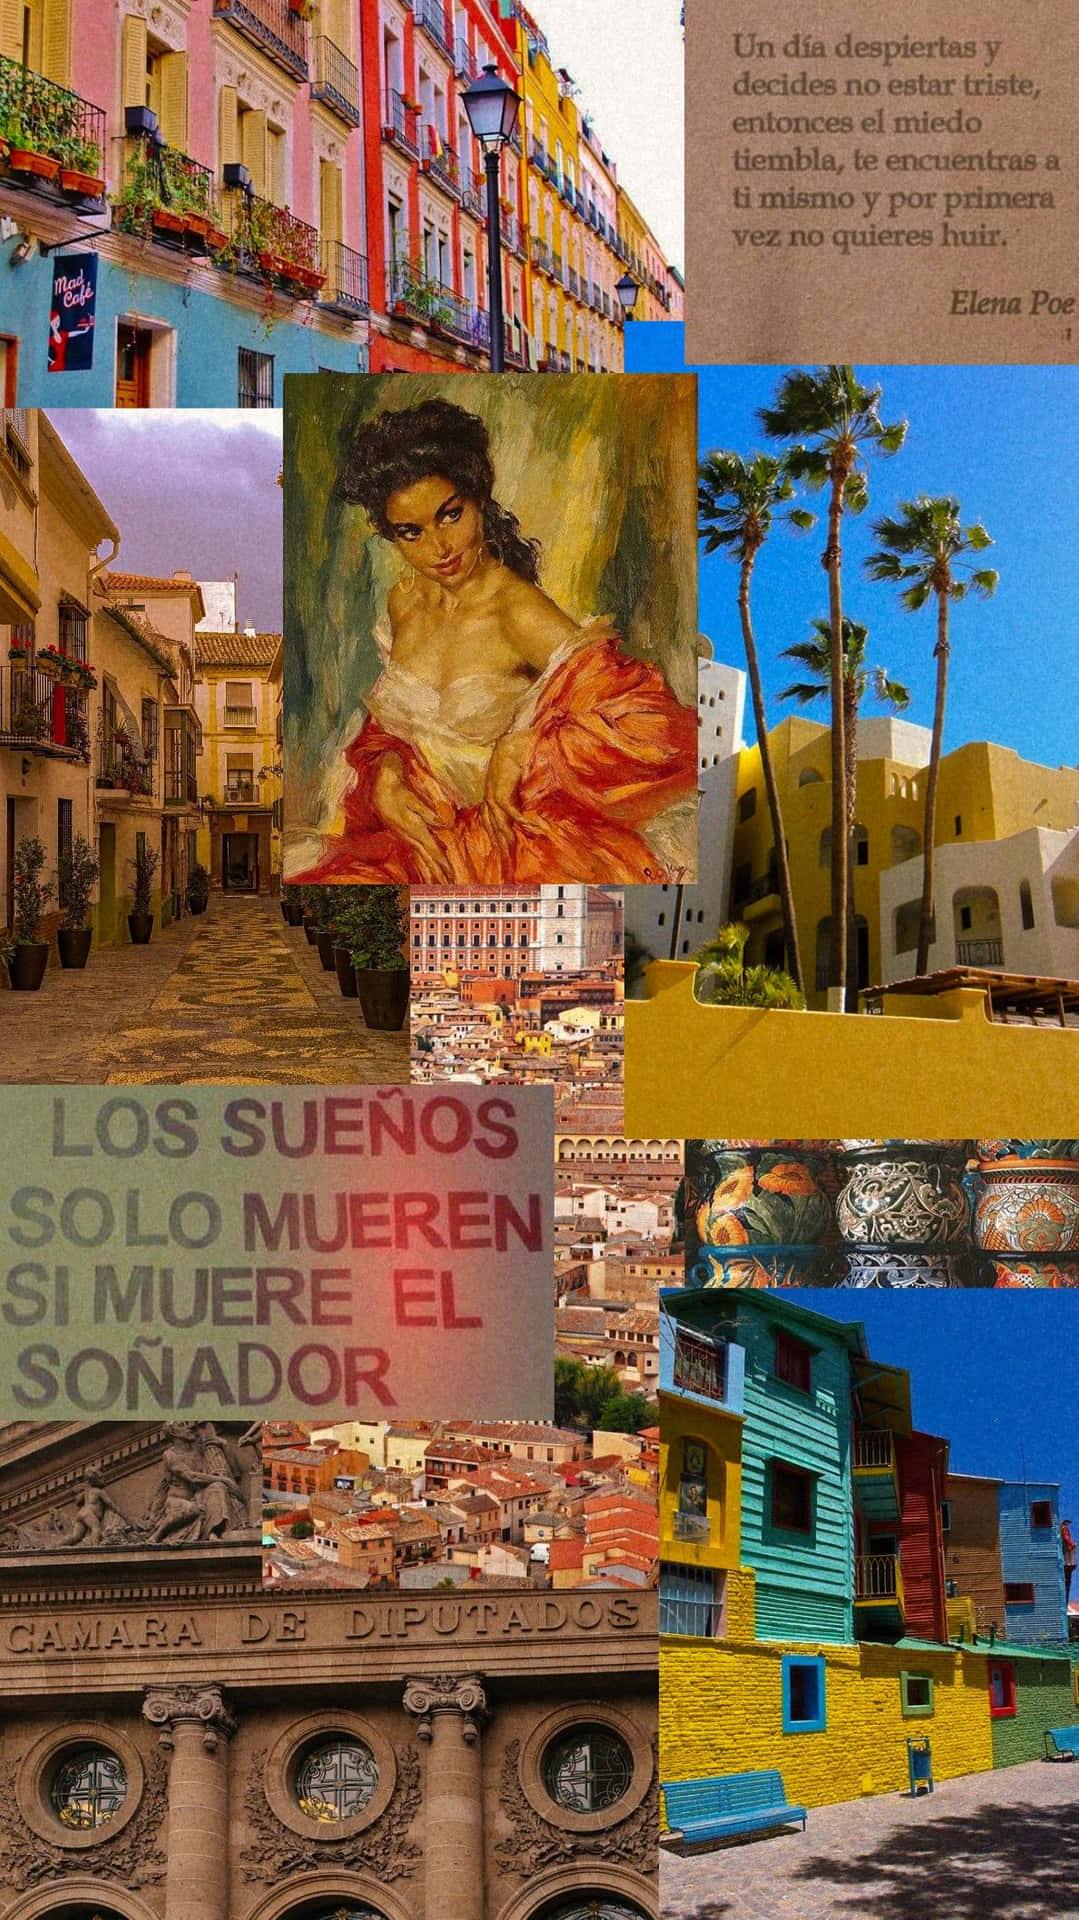 Nyd de dejlige spild af spansk kultur med en livfuld og farverig mur.